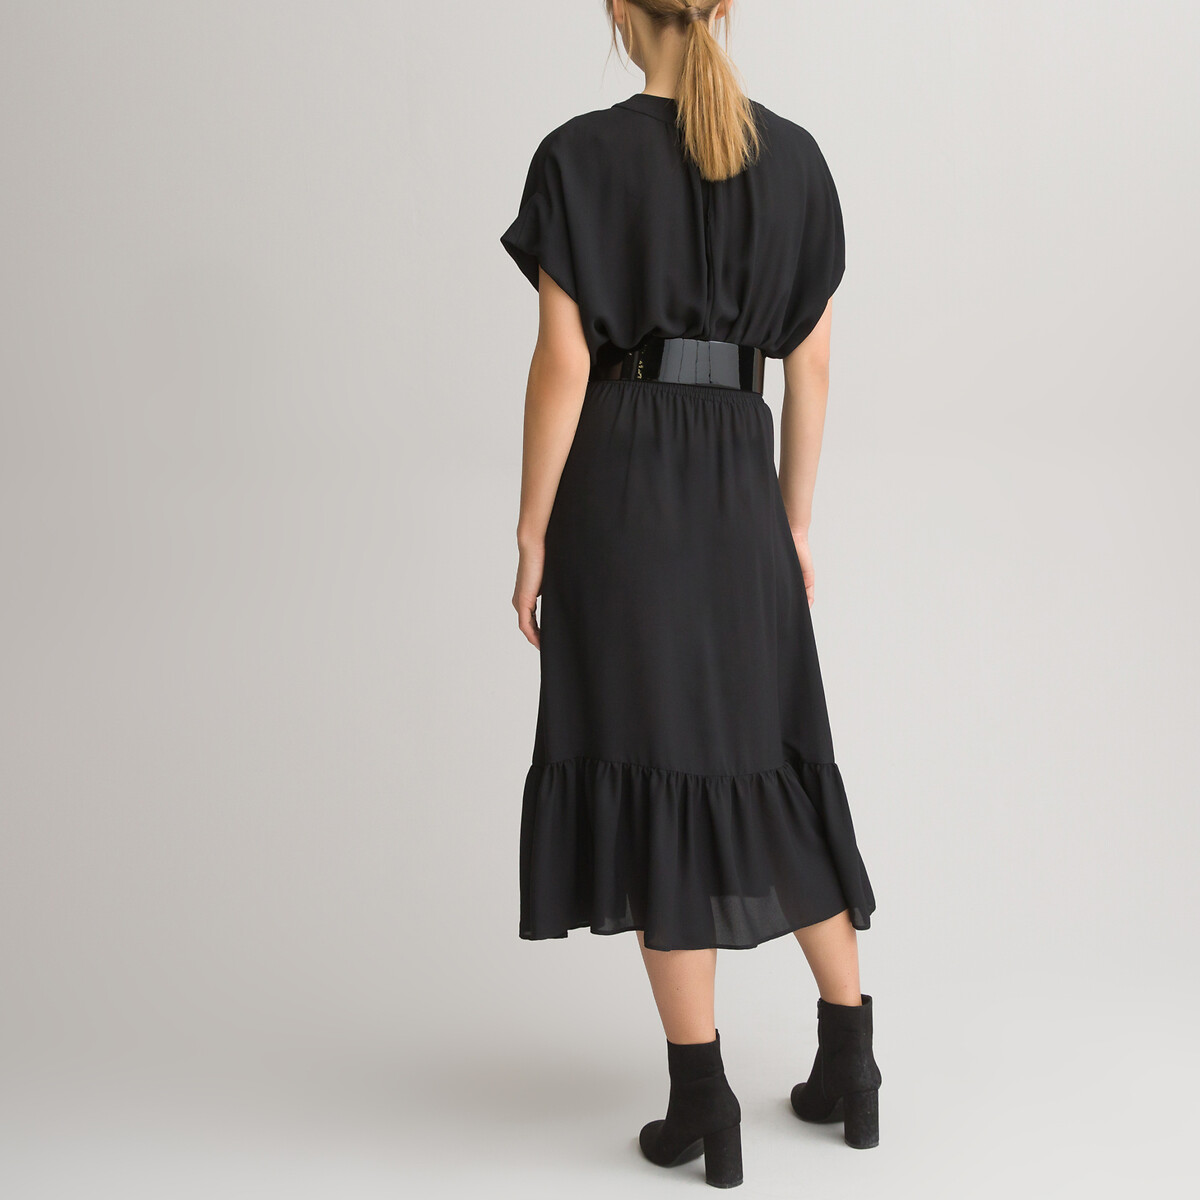 Платье LaRedoute Длинное с короткими рукавами 38 (FR) - 44 (RUS) черный, размер 38 (FR) - 44 (RUS) Длинное с короткими рукавами 38 (FR) - 44 (RUS) черный - фото 4